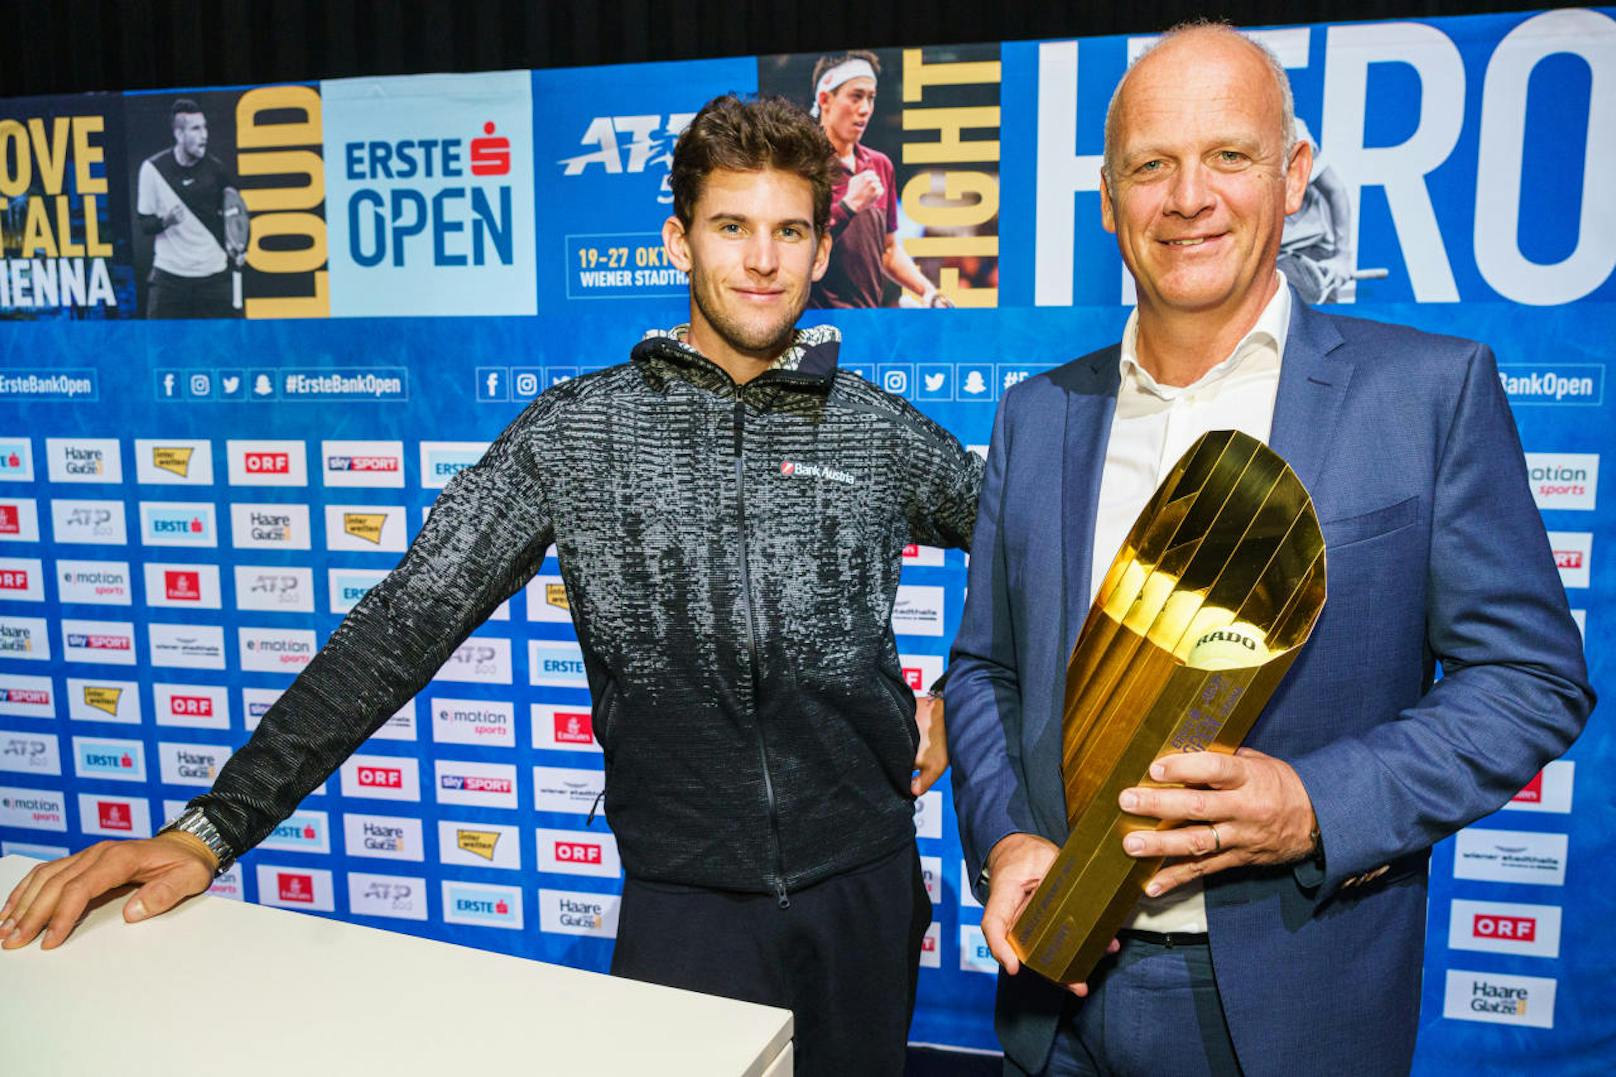 v.li.: Dominic Thiem mit Turnierdirektor und Veranstalter Herwig Straka und dem Siegerpokal der Erste Bank Open 2019 am 09.09.2019.